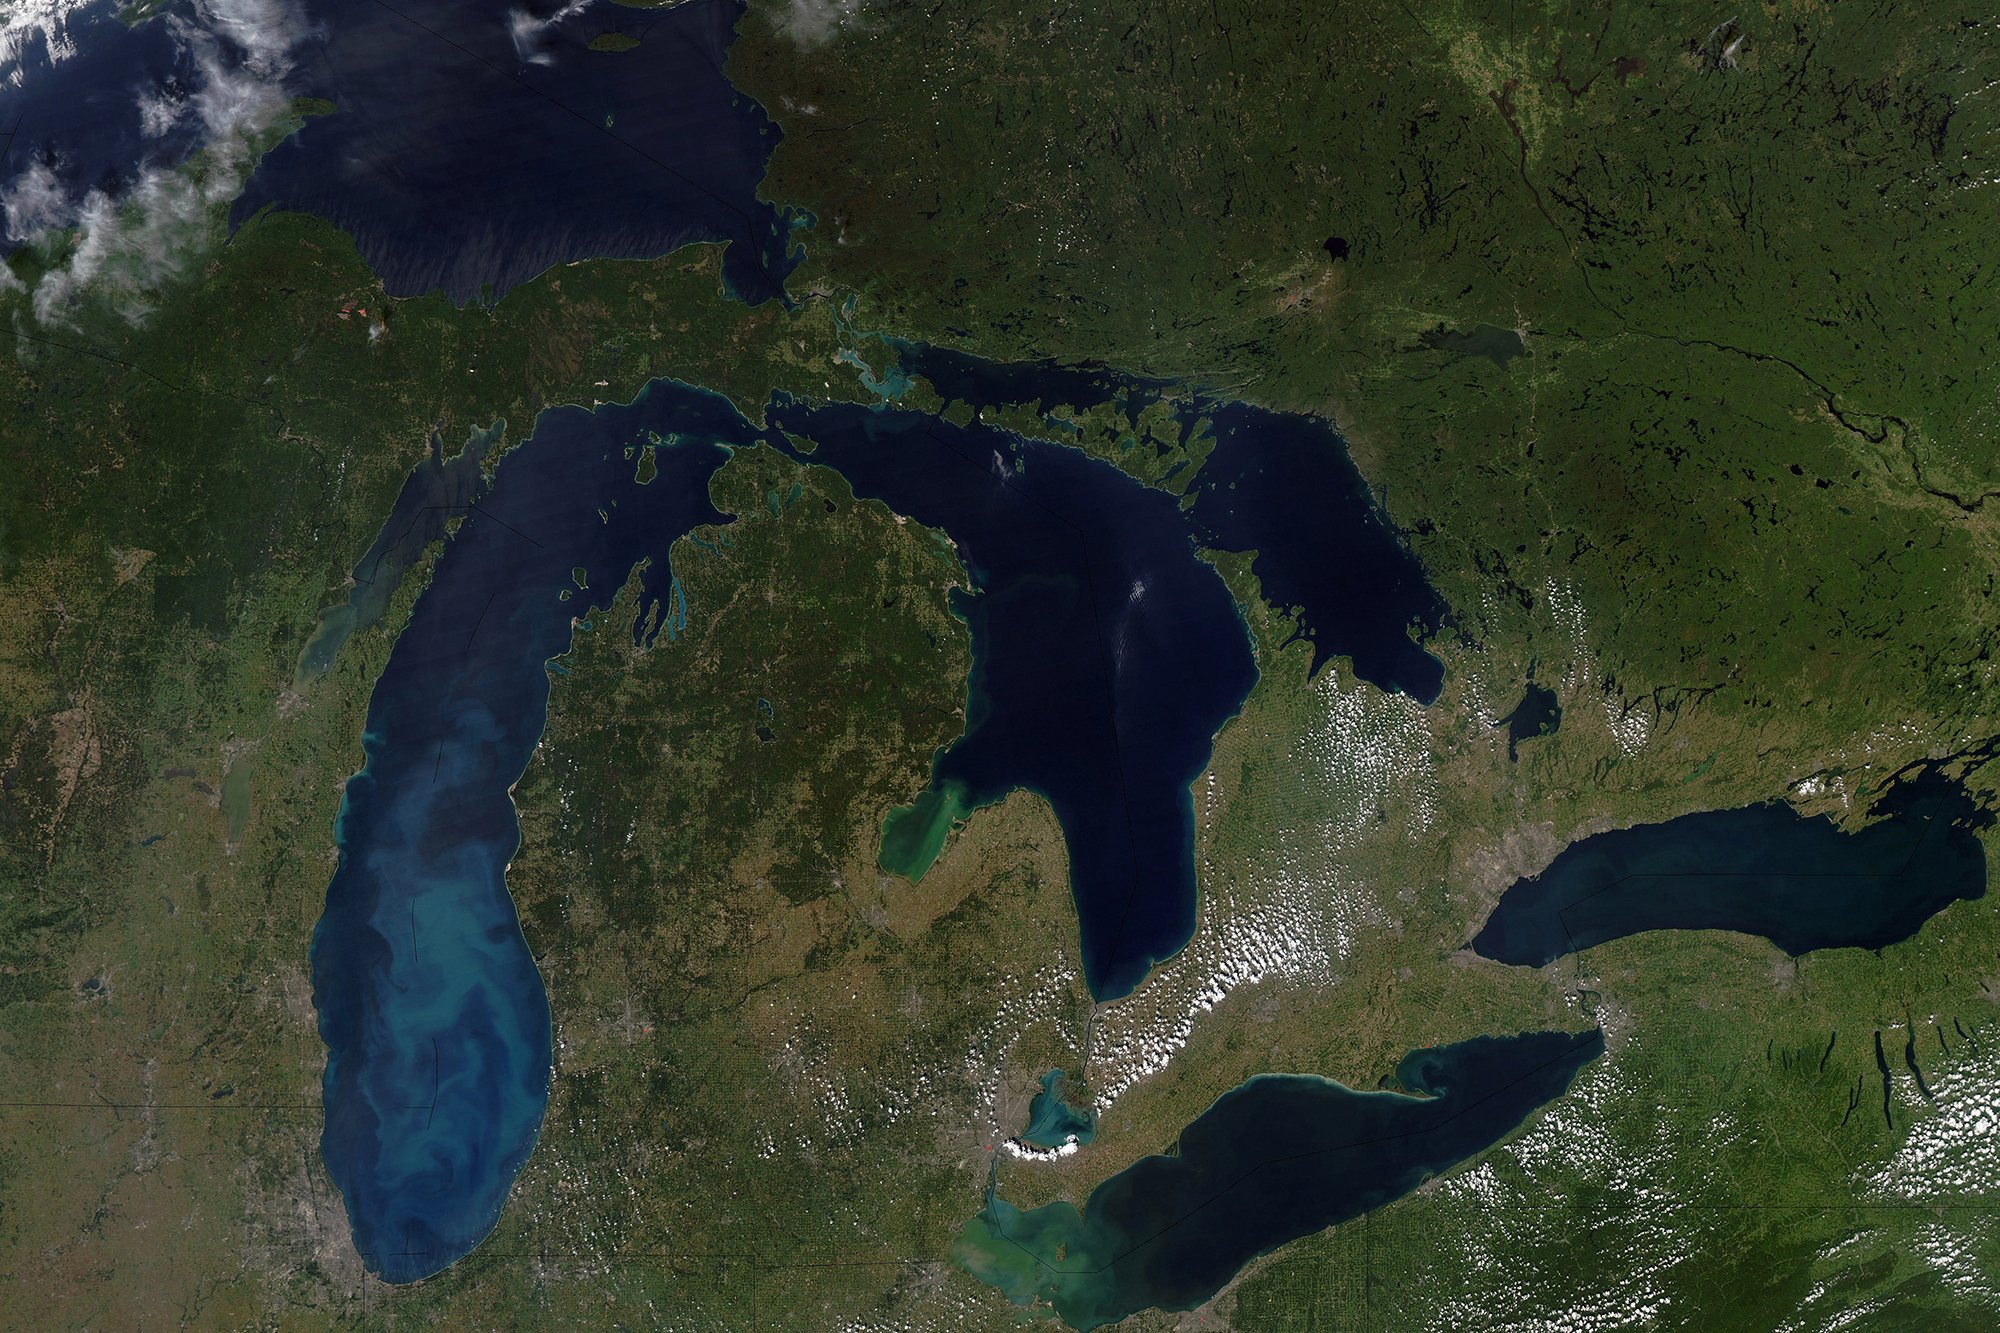 Озеро входящее в состав великих американских озер. Озеро Гурон Северная Америка. Великие озера (бассейн Атлантического океана). Великие американские озёра верхнее Гурон Мичиган Эри Онтарио. Верхнее Мичиган Гурон Эри Онтарио.